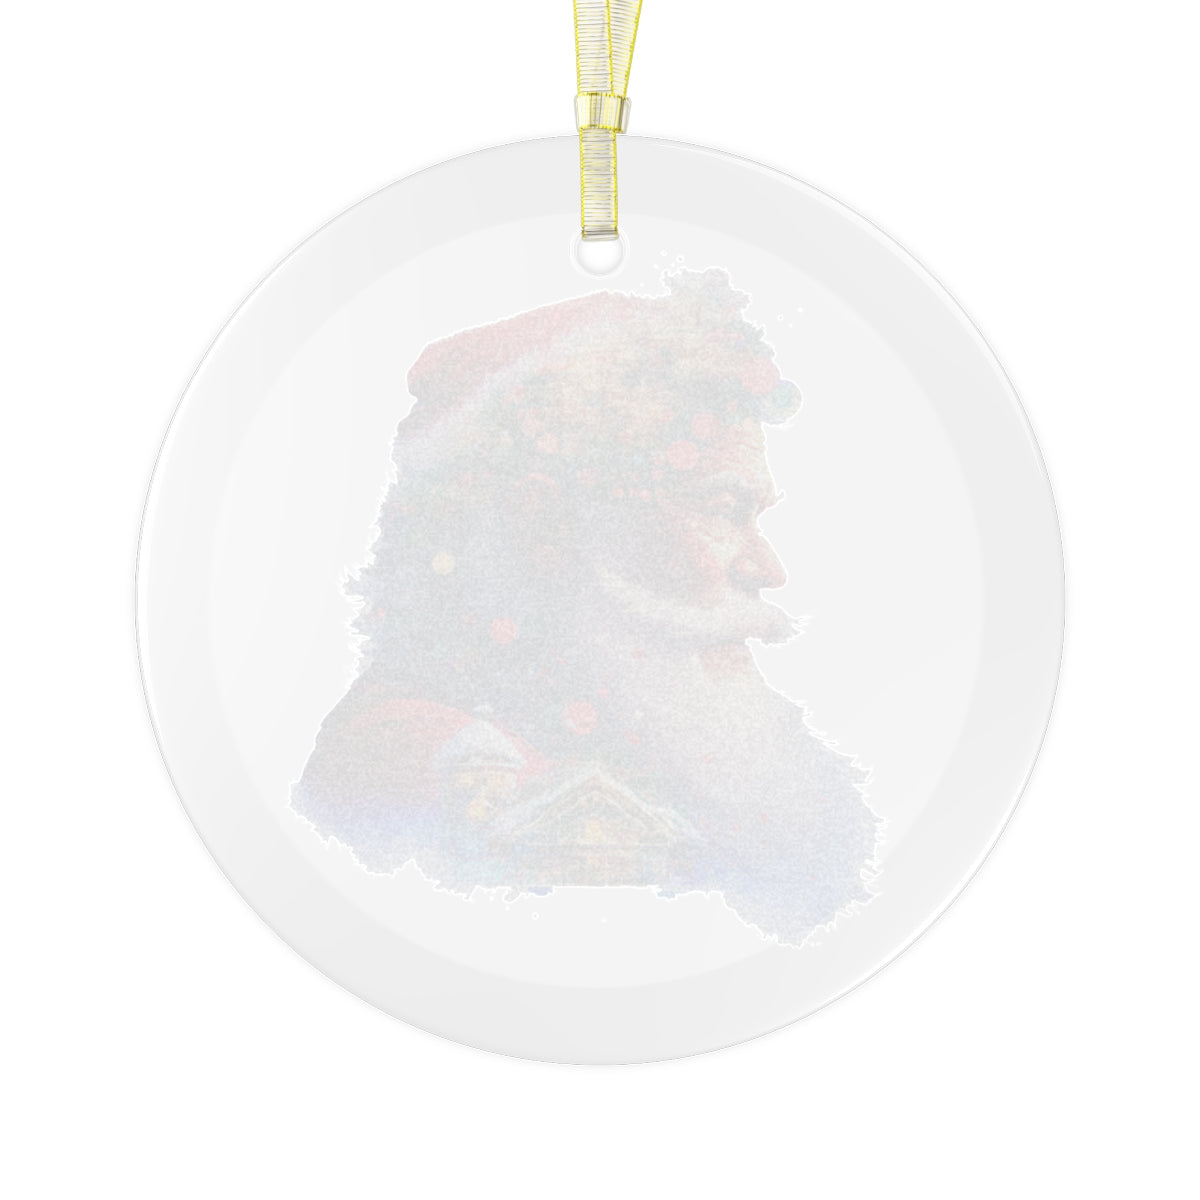 Neduz Designs Exposed Christmas Holidays Santa Claus Glass Ornament